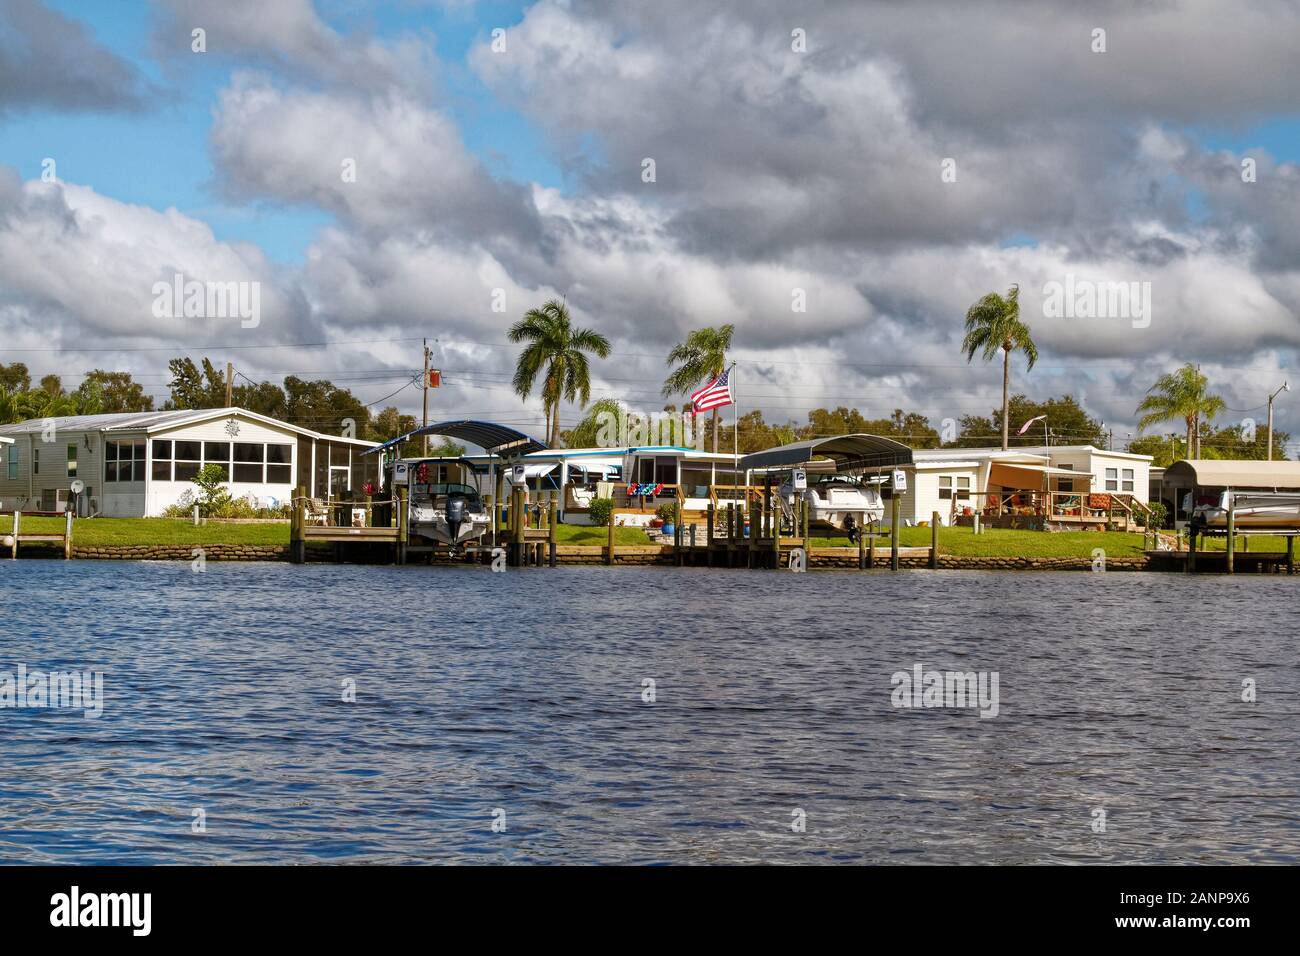 Les maisons préfabriquées, waterfront, les quais, les bateaux des ascenseurs, des palmiers, de la communauté, le logement, l'Orange River, Fort Myers, FL, en Floride ; l'hiver ; horizontal Banque D'Images